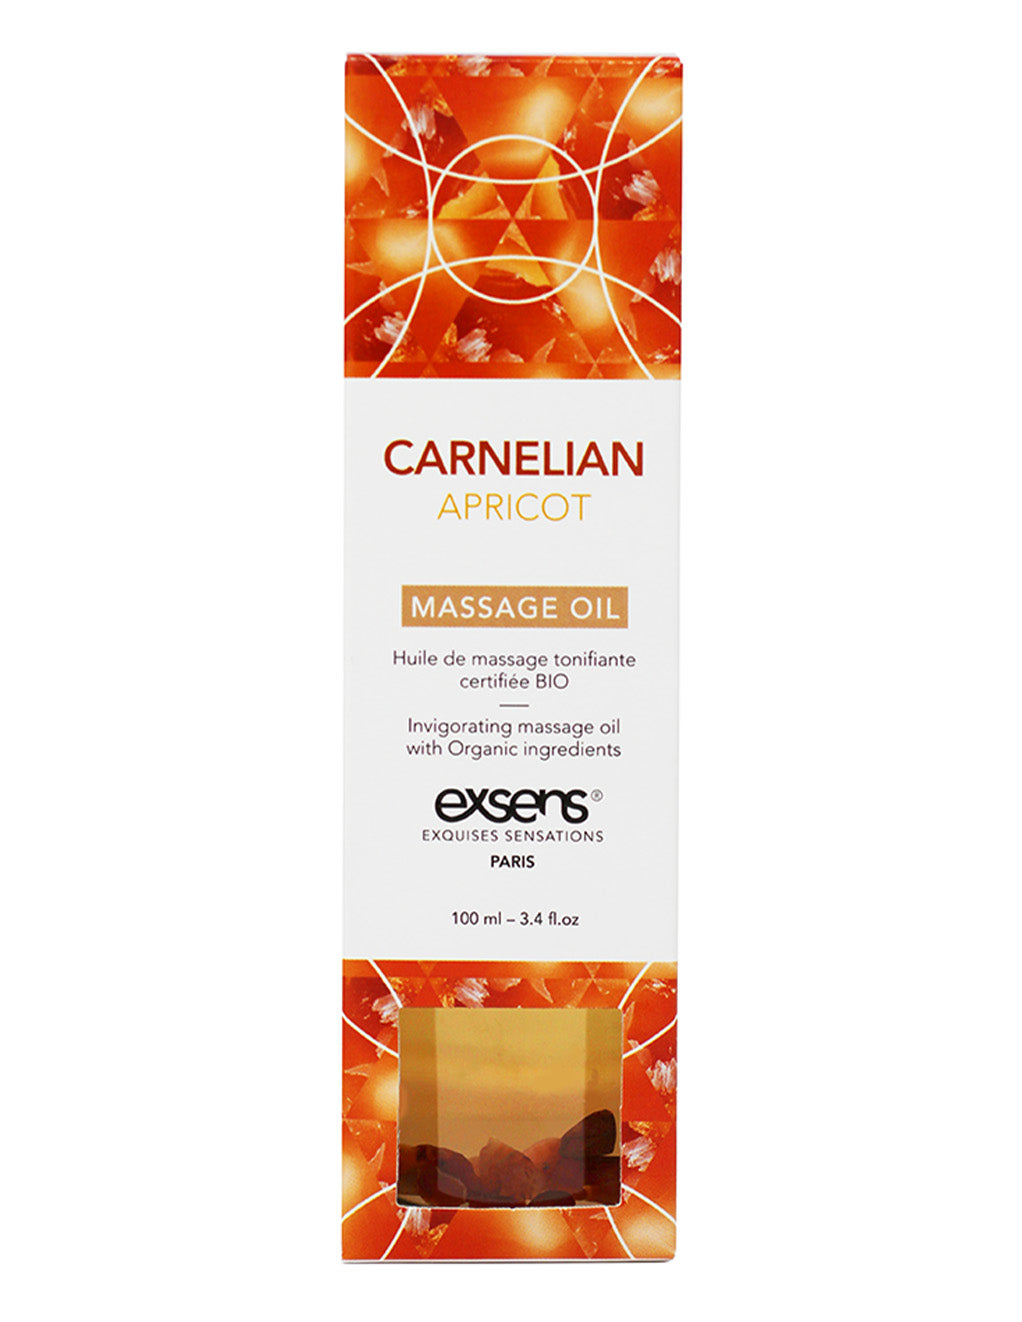 Carnelian Apricot Body & Massage Oil- Package